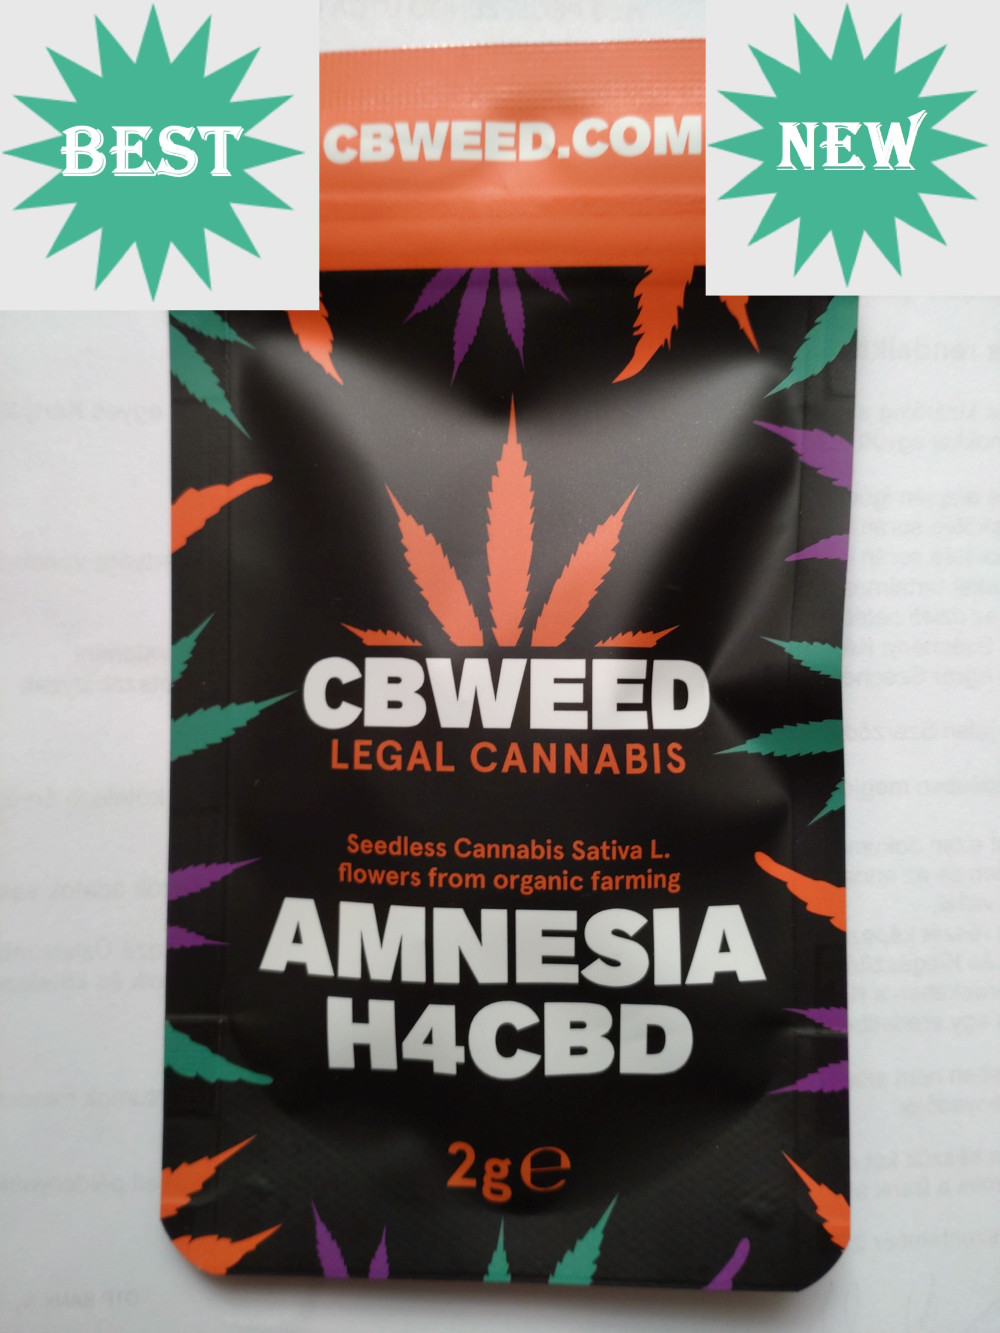 H4CBD AMNESIA 2g /H4CBD cannabis/